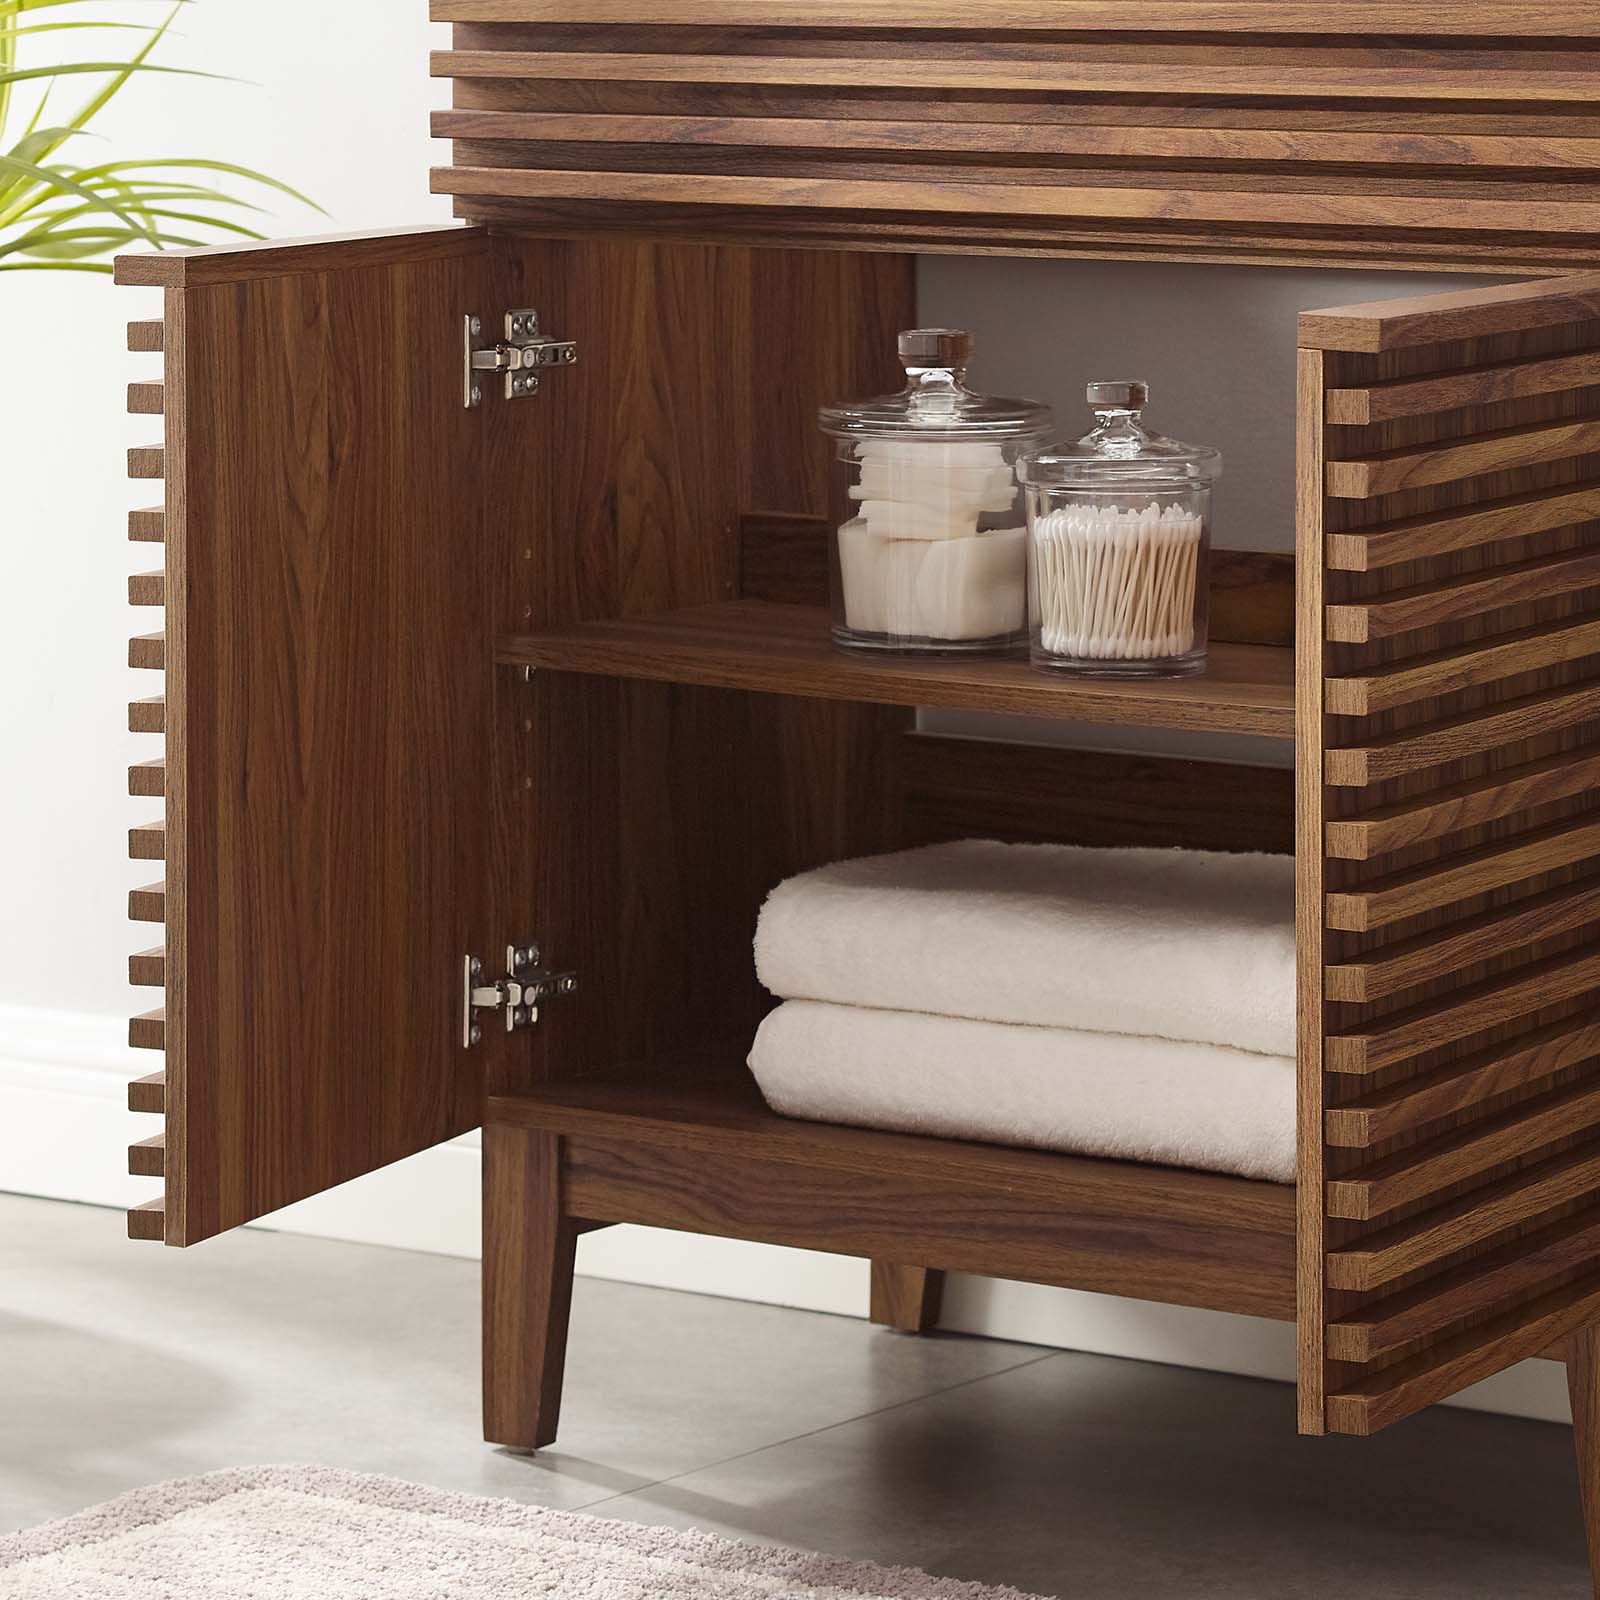 Render 30" Bathroom Vanity Cabinet (Sink Basin Not Included) - East Shore Modern Home Furnishings